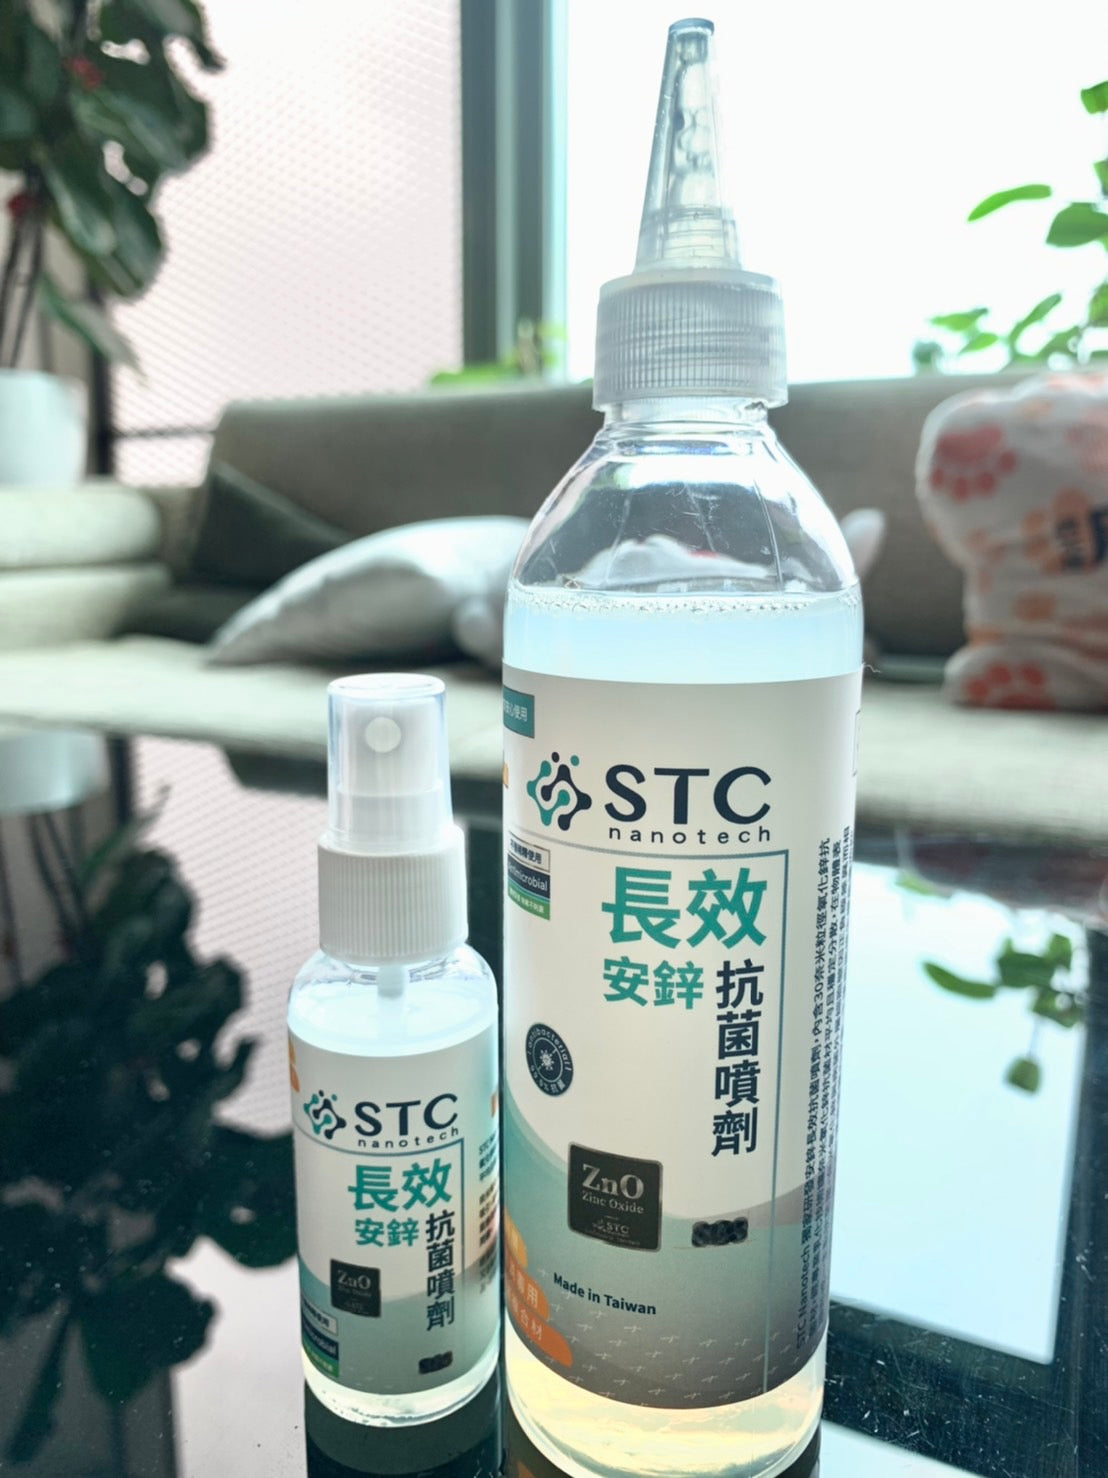 STC Nanotech安鋅長效抗菌噴劑